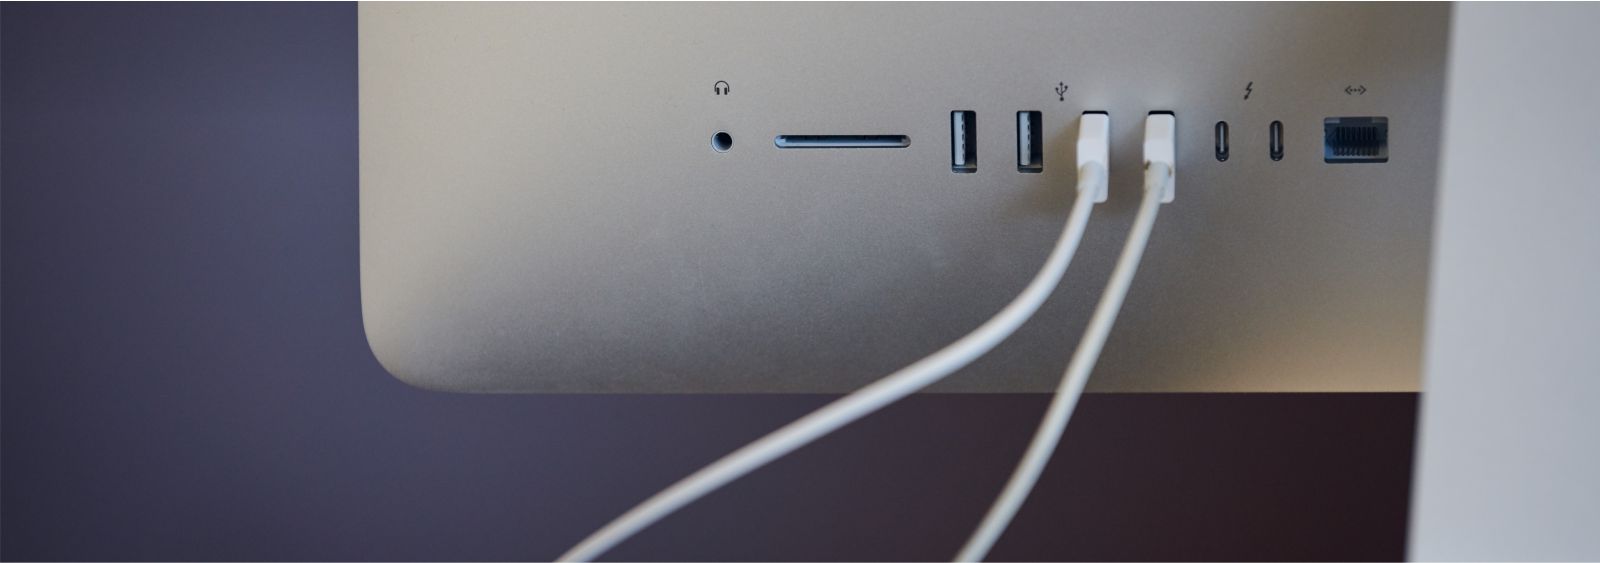 tył monitora Apple Studio Display z podpiętymi białymi kablami USB